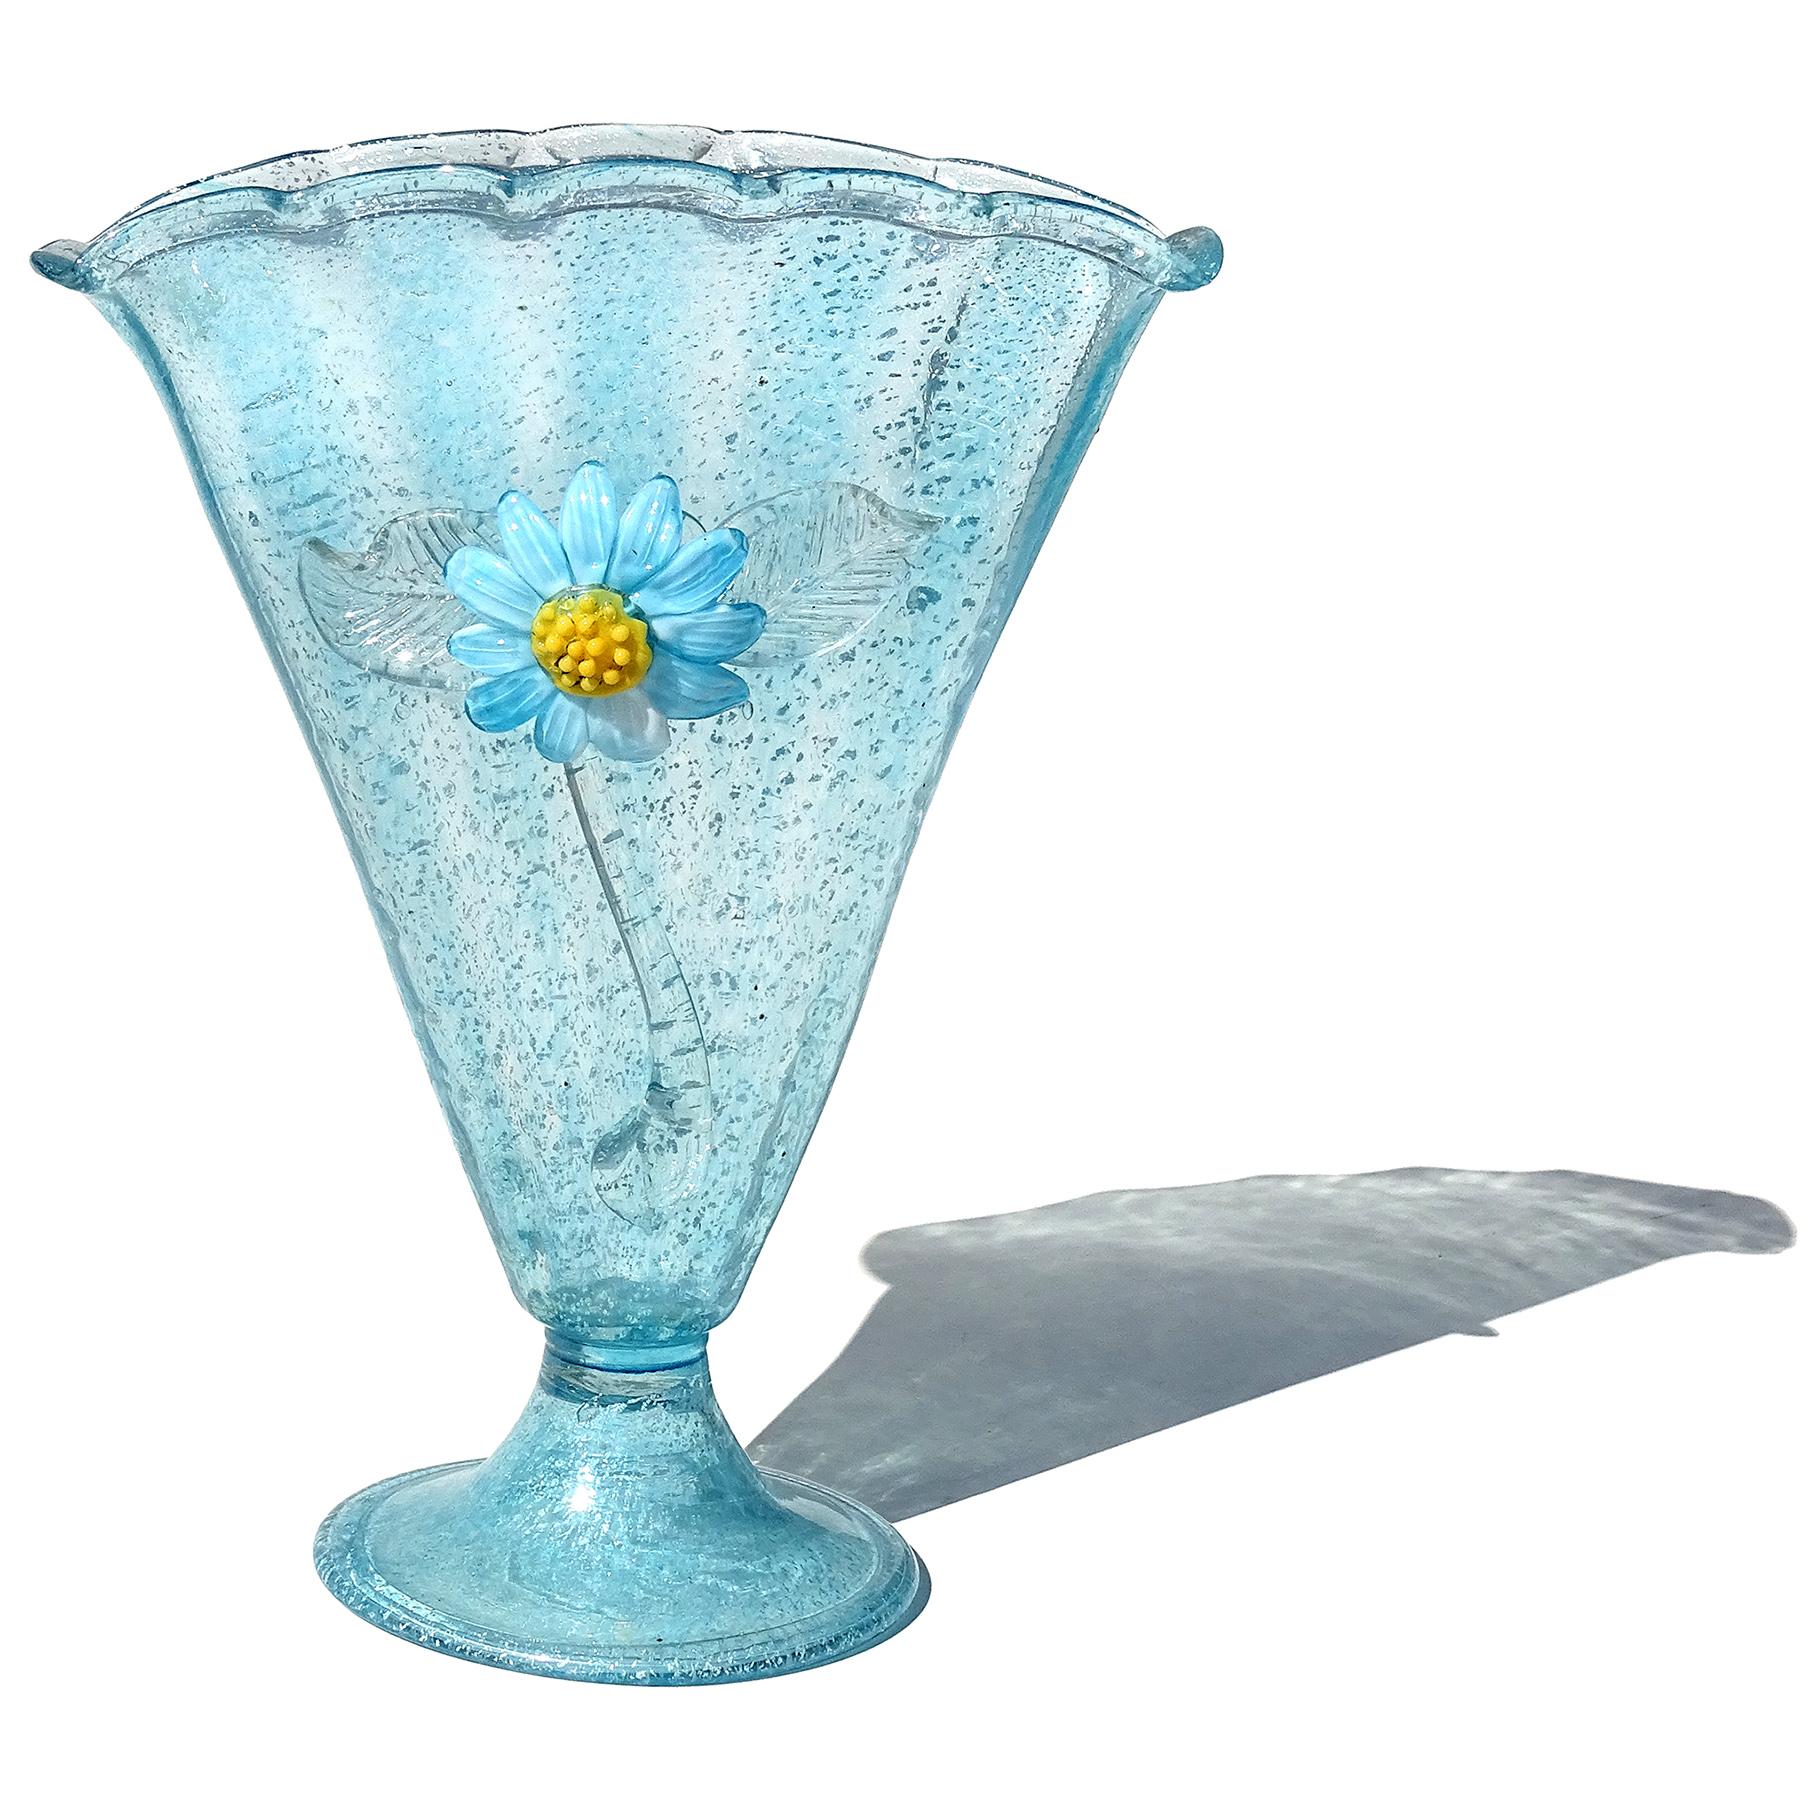 Schöne antike, frühe Murano mundgeblasenen blauen und silbernen Flecken italienische Kunst Glas fächerförmige Vase mit Fuß. Der Firma Fratelli Toso zugeschrieben, mit einer ähnlichen Vase, die im Firmenbuch abgebildet ist. Die Vase ist reichlich mit